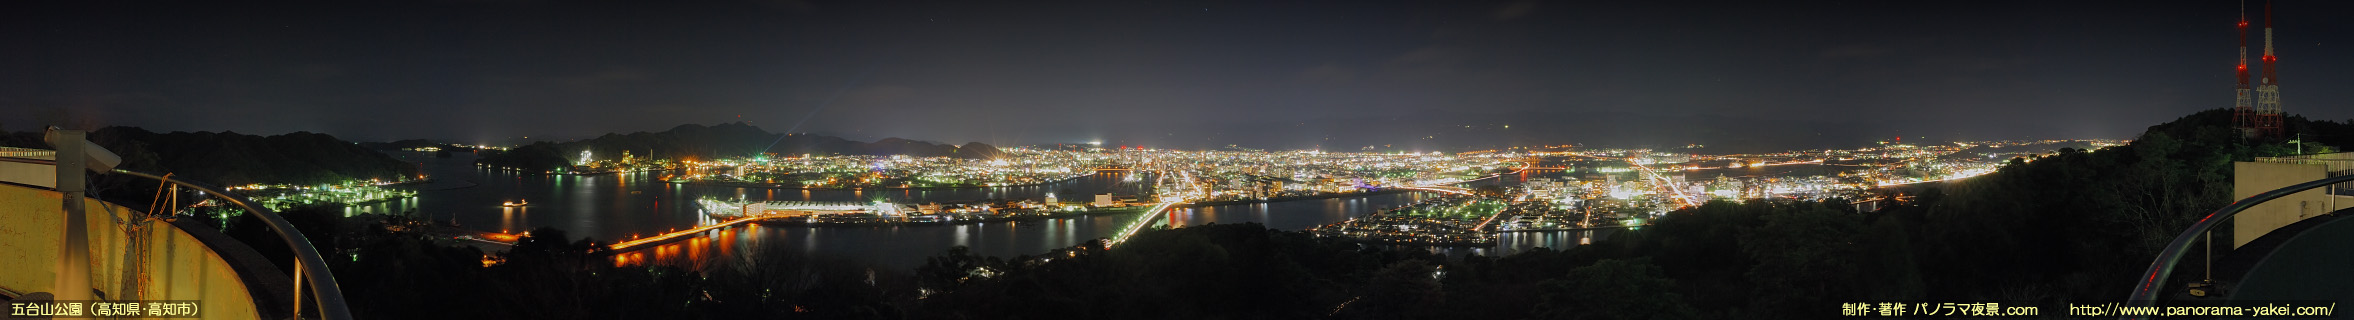 五台山展望台からのパノラマ夜景写真